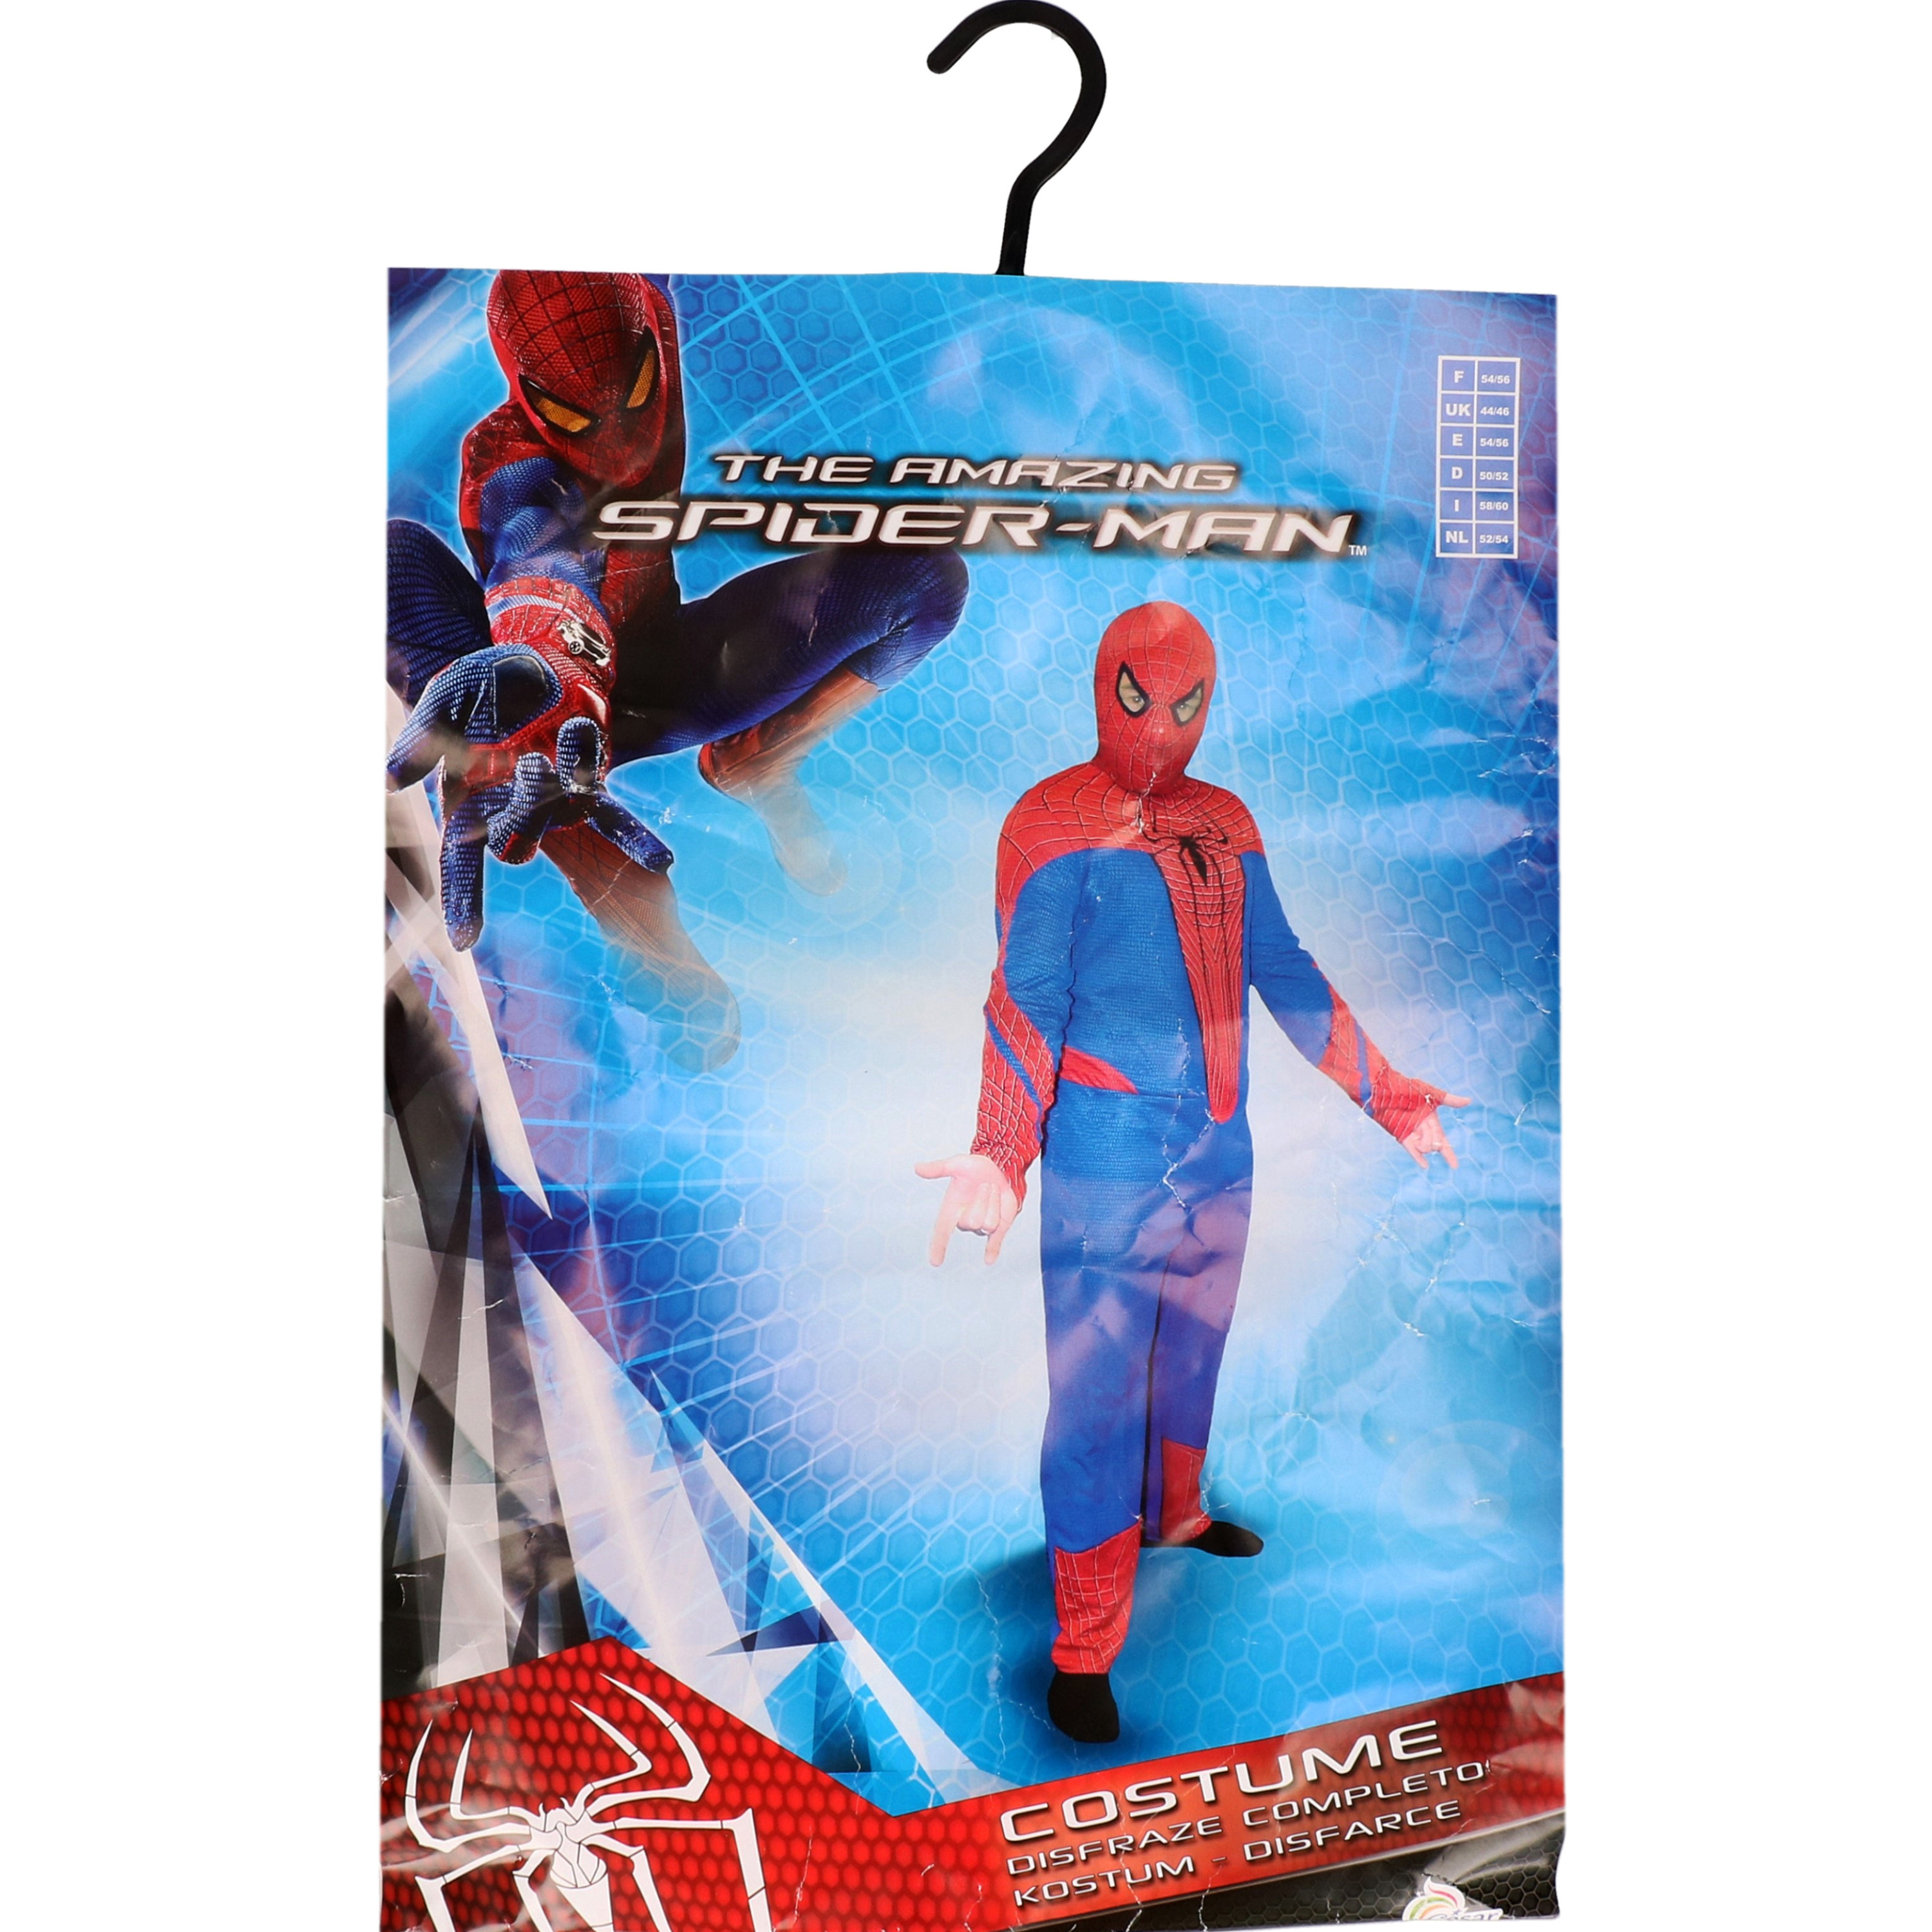 Spiderman kostuum volwassenen